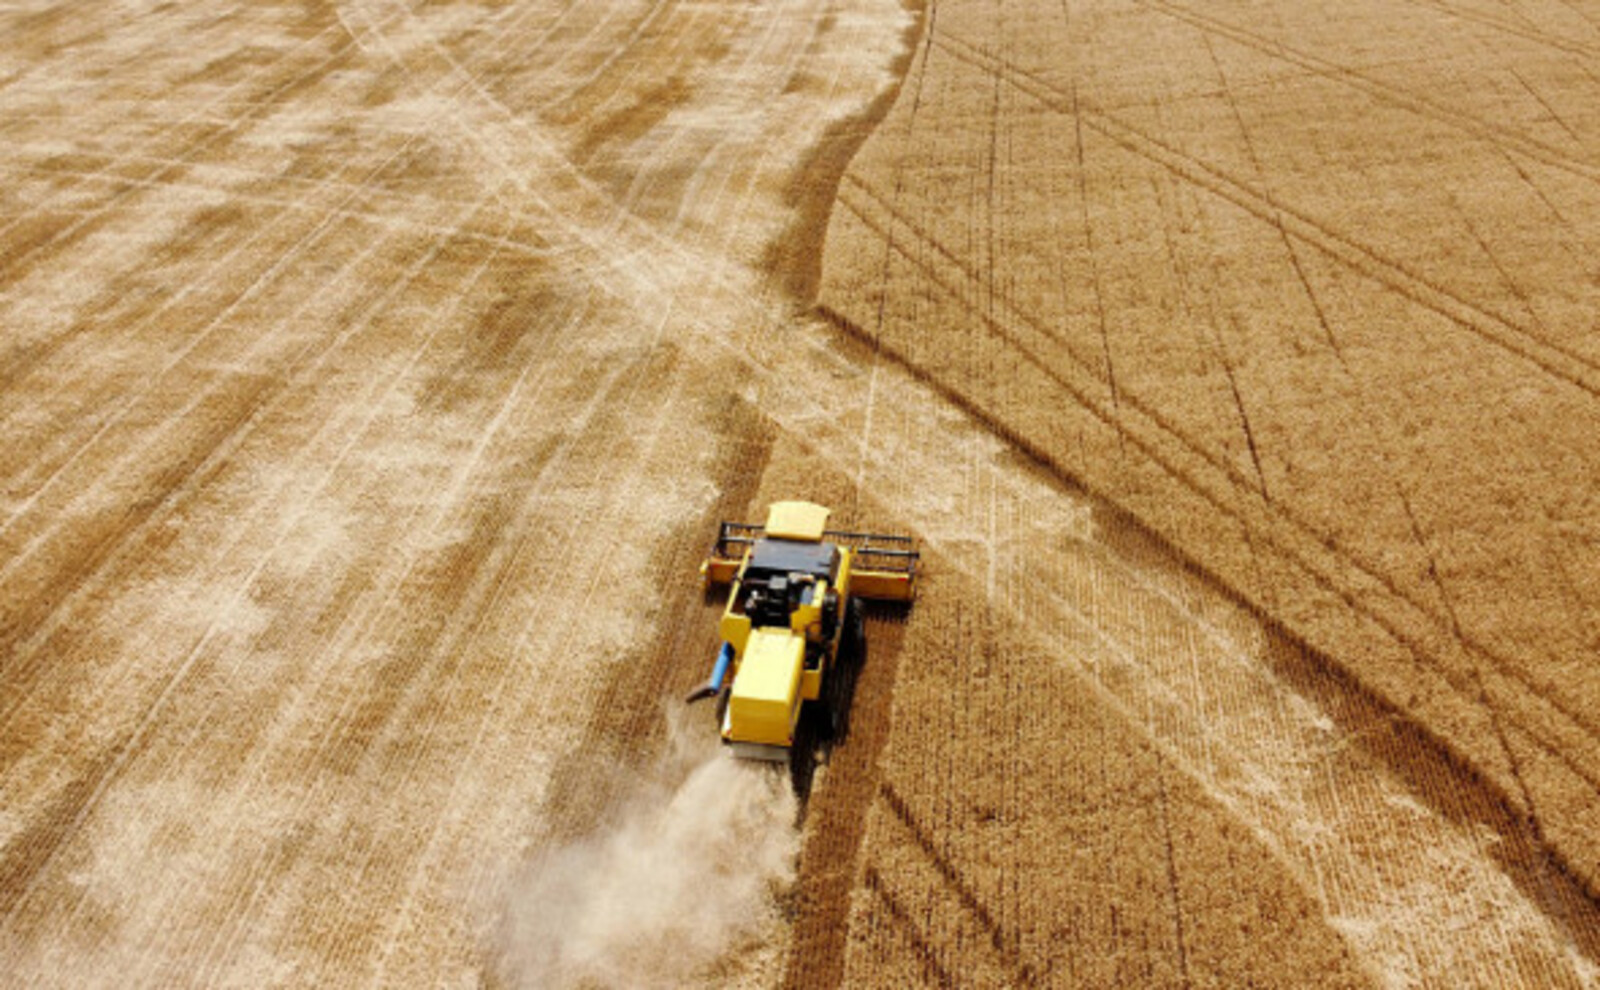 Путин спрогнозировал рекордный урожай пшеницы